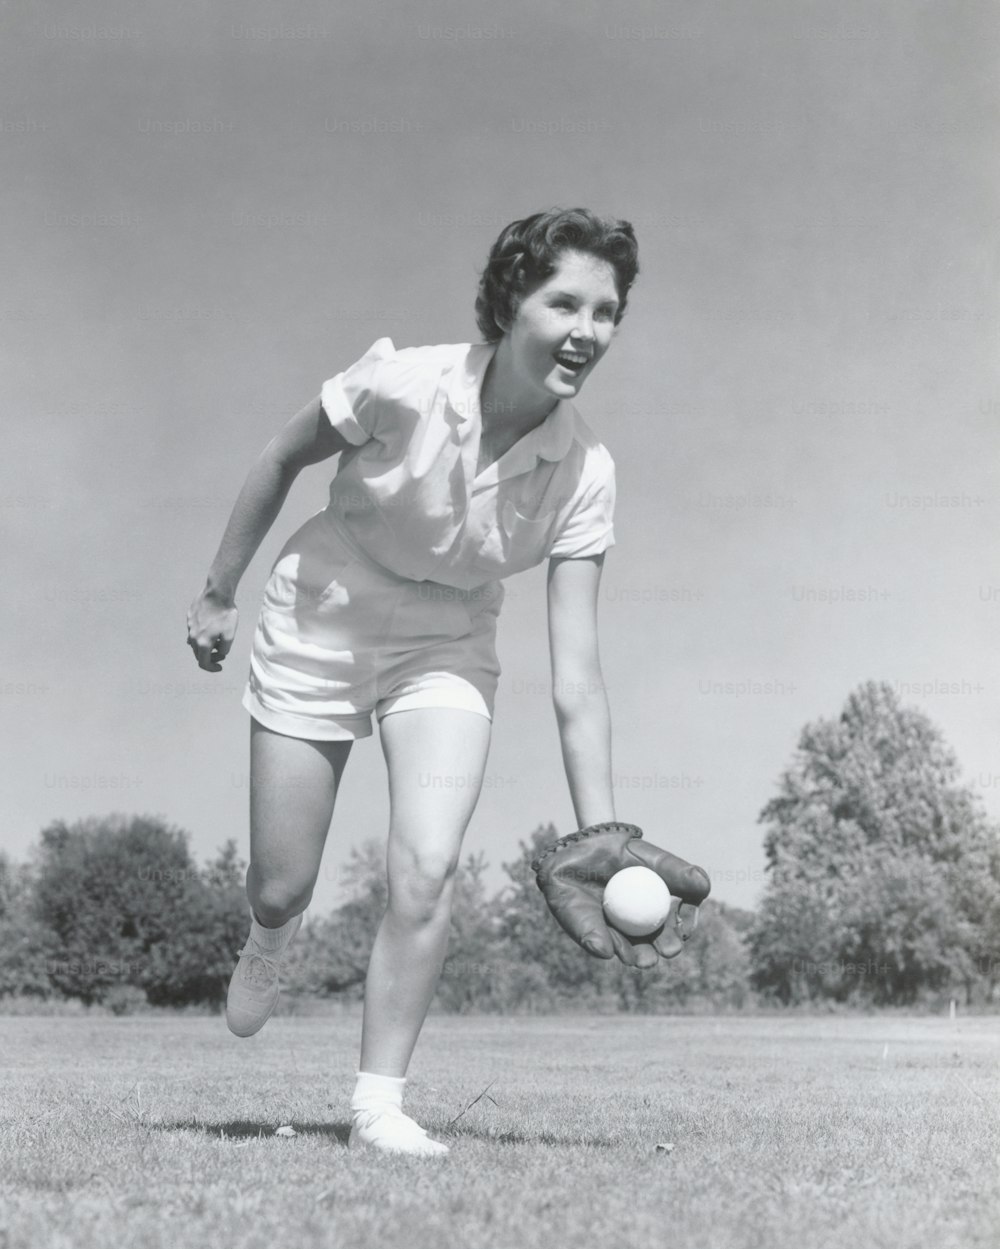 VEREINIGTE STAATEN - CIRCA 1950er Jahre: Junge Frau fängt Baseball in Handschuhen.